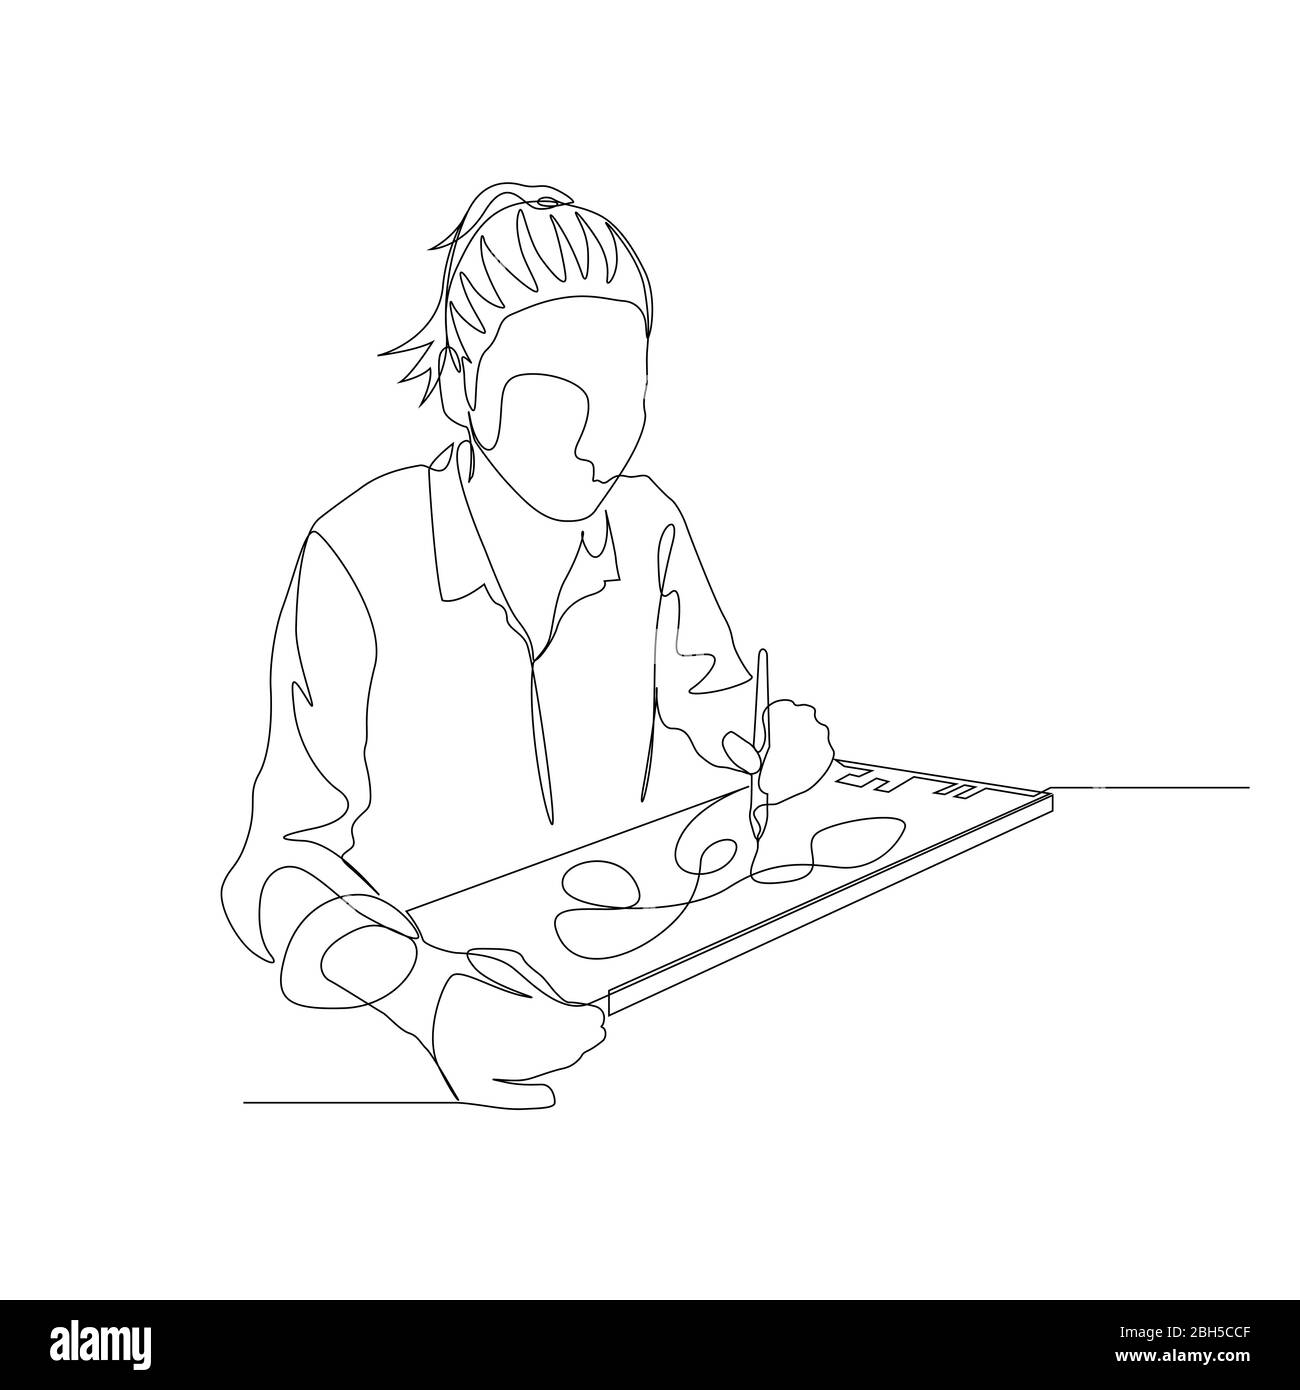 Femme continue d'une ligne dans le dessin de chemise avec une tablette graphique d'aide. Artiste numérique. Vecteur Illustration de Vecteur